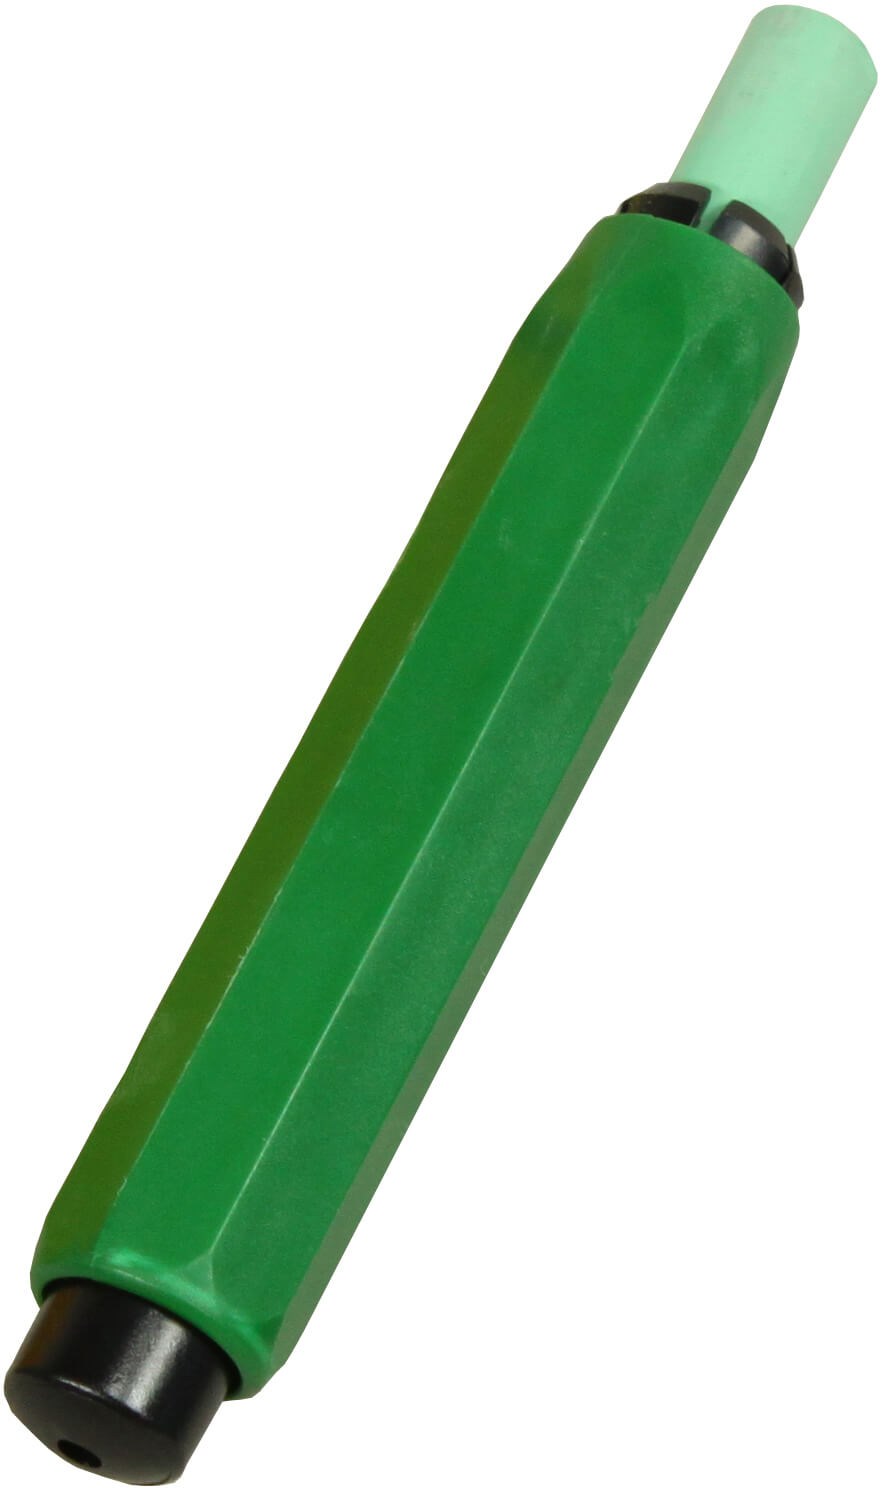 Kreidehalter für Robercolorkreide grün (1 Stück)